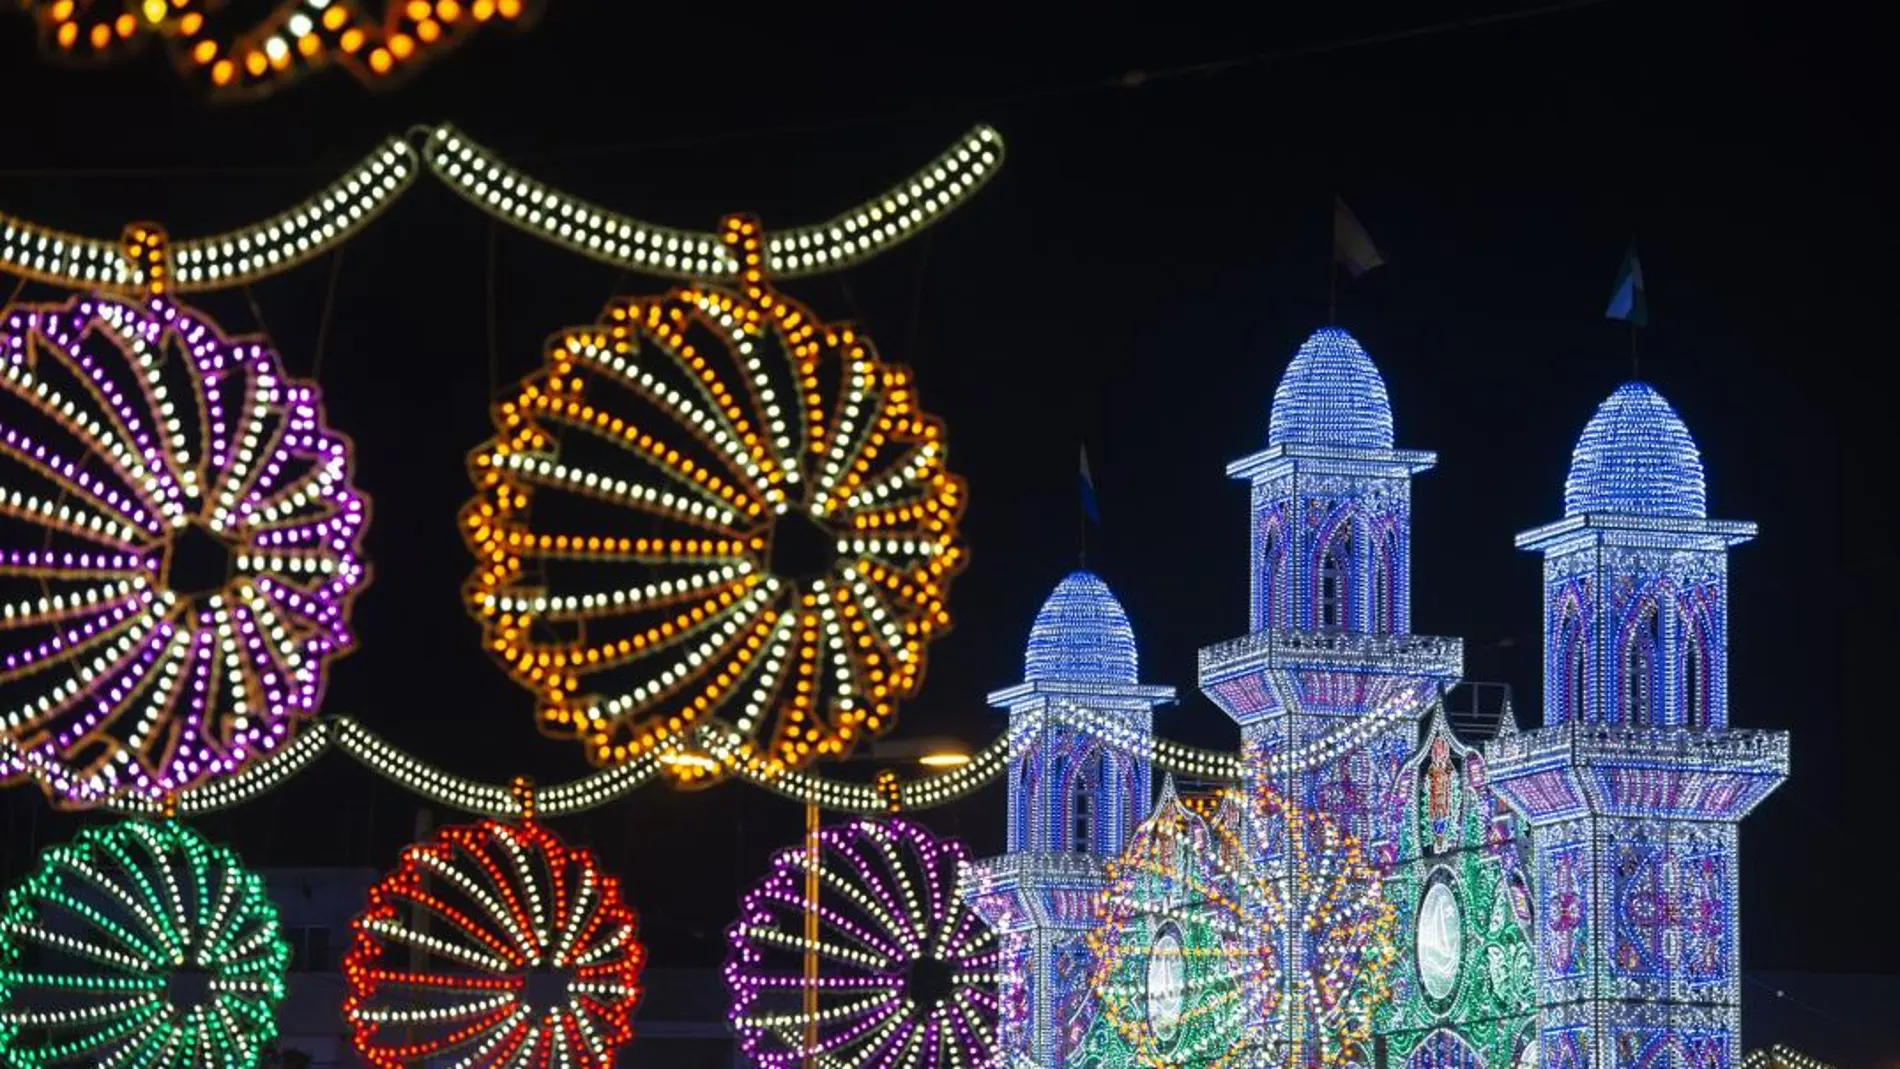 La Feria de Algeciras cuenta con 52 casetas, todas de puertas abiertas. La Portada del Real, por su parte, cuenta con 80.000 puntos de luz led